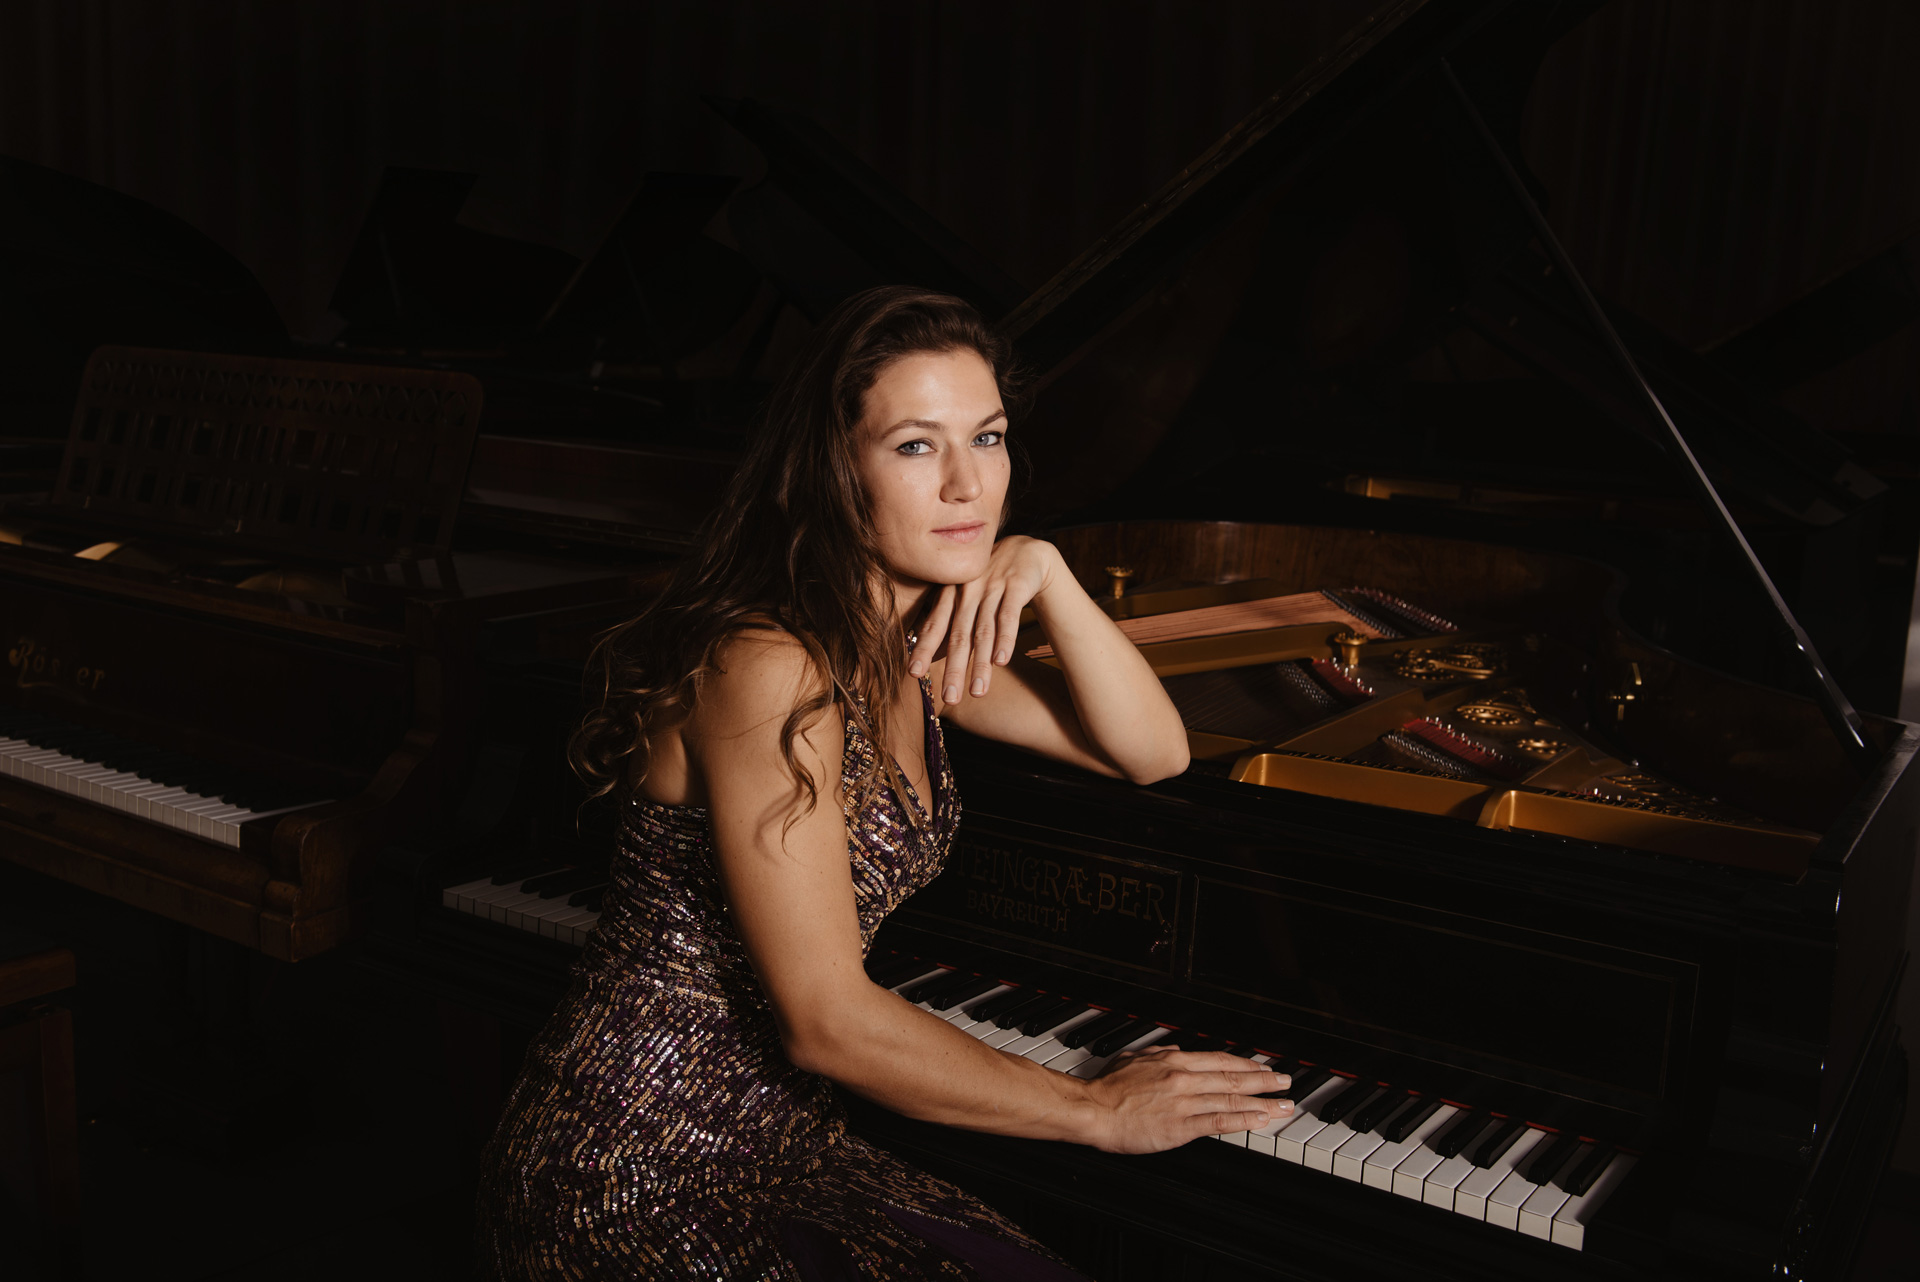 Julia Maria Sliwa am Klavier